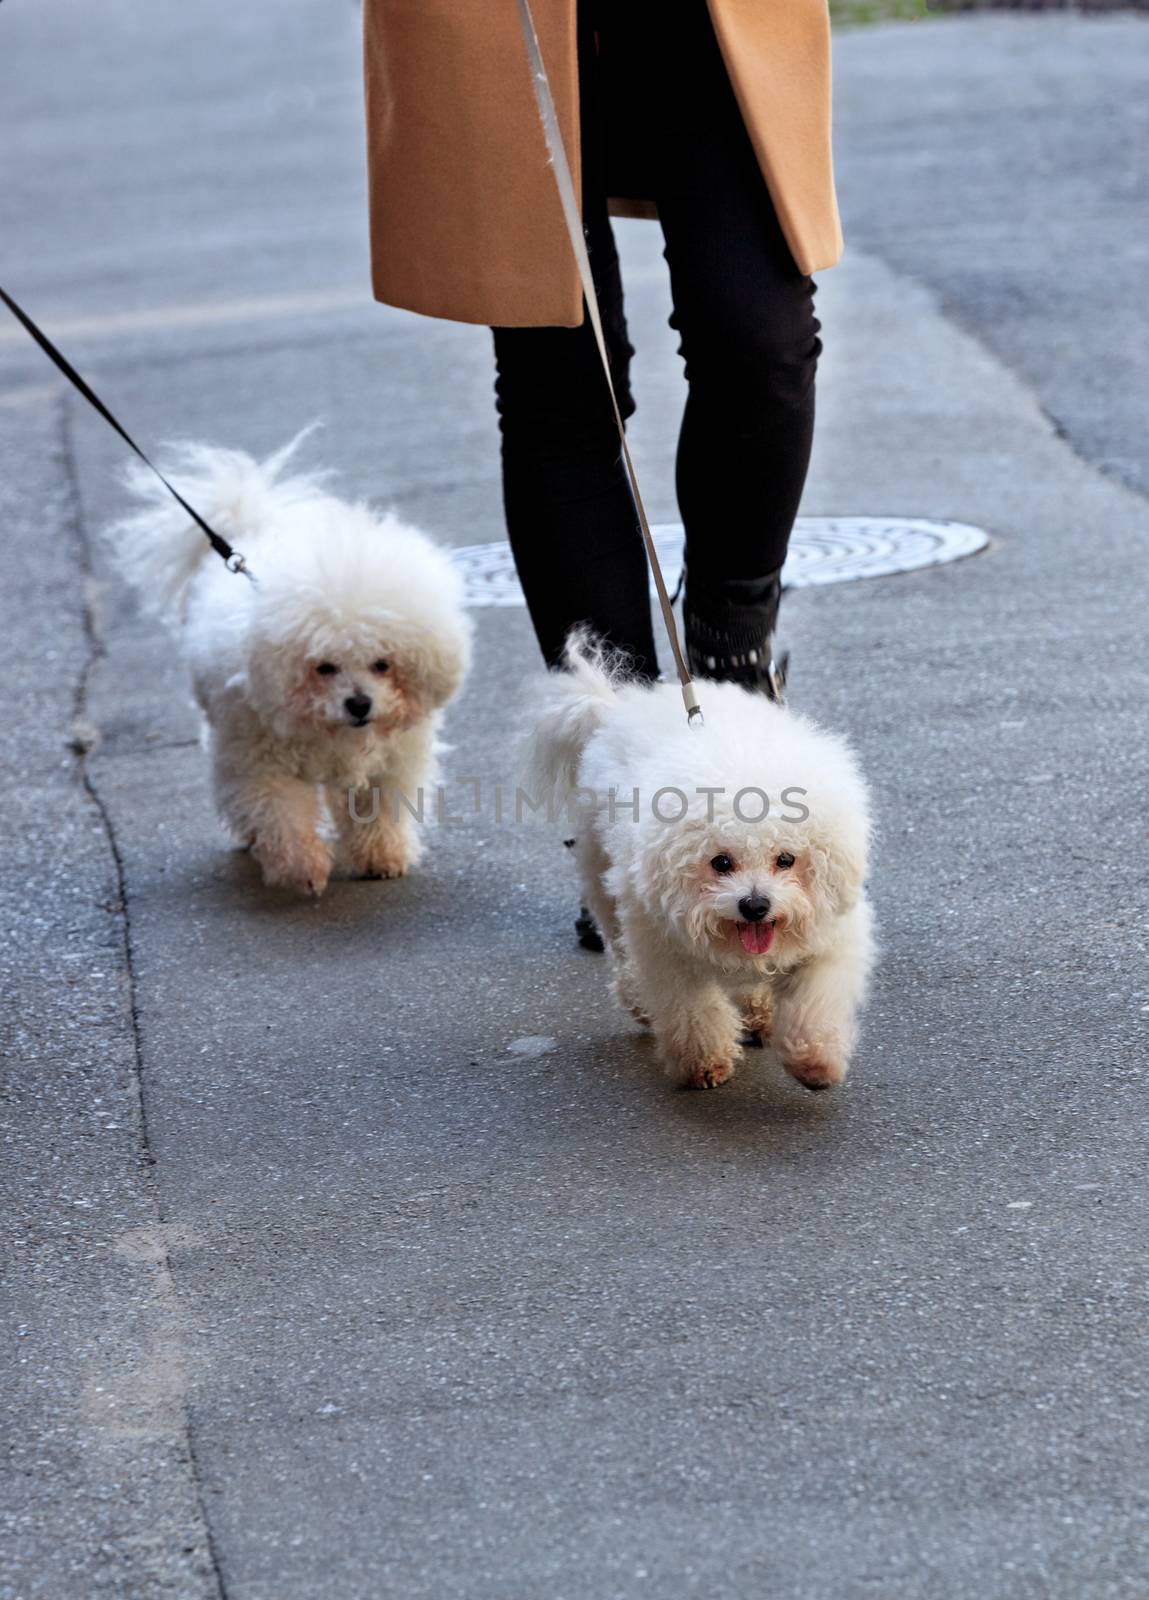 White Bichon Frize dogs walk on a leash, accompanied by their mistress, on the asphalt sidewalk.